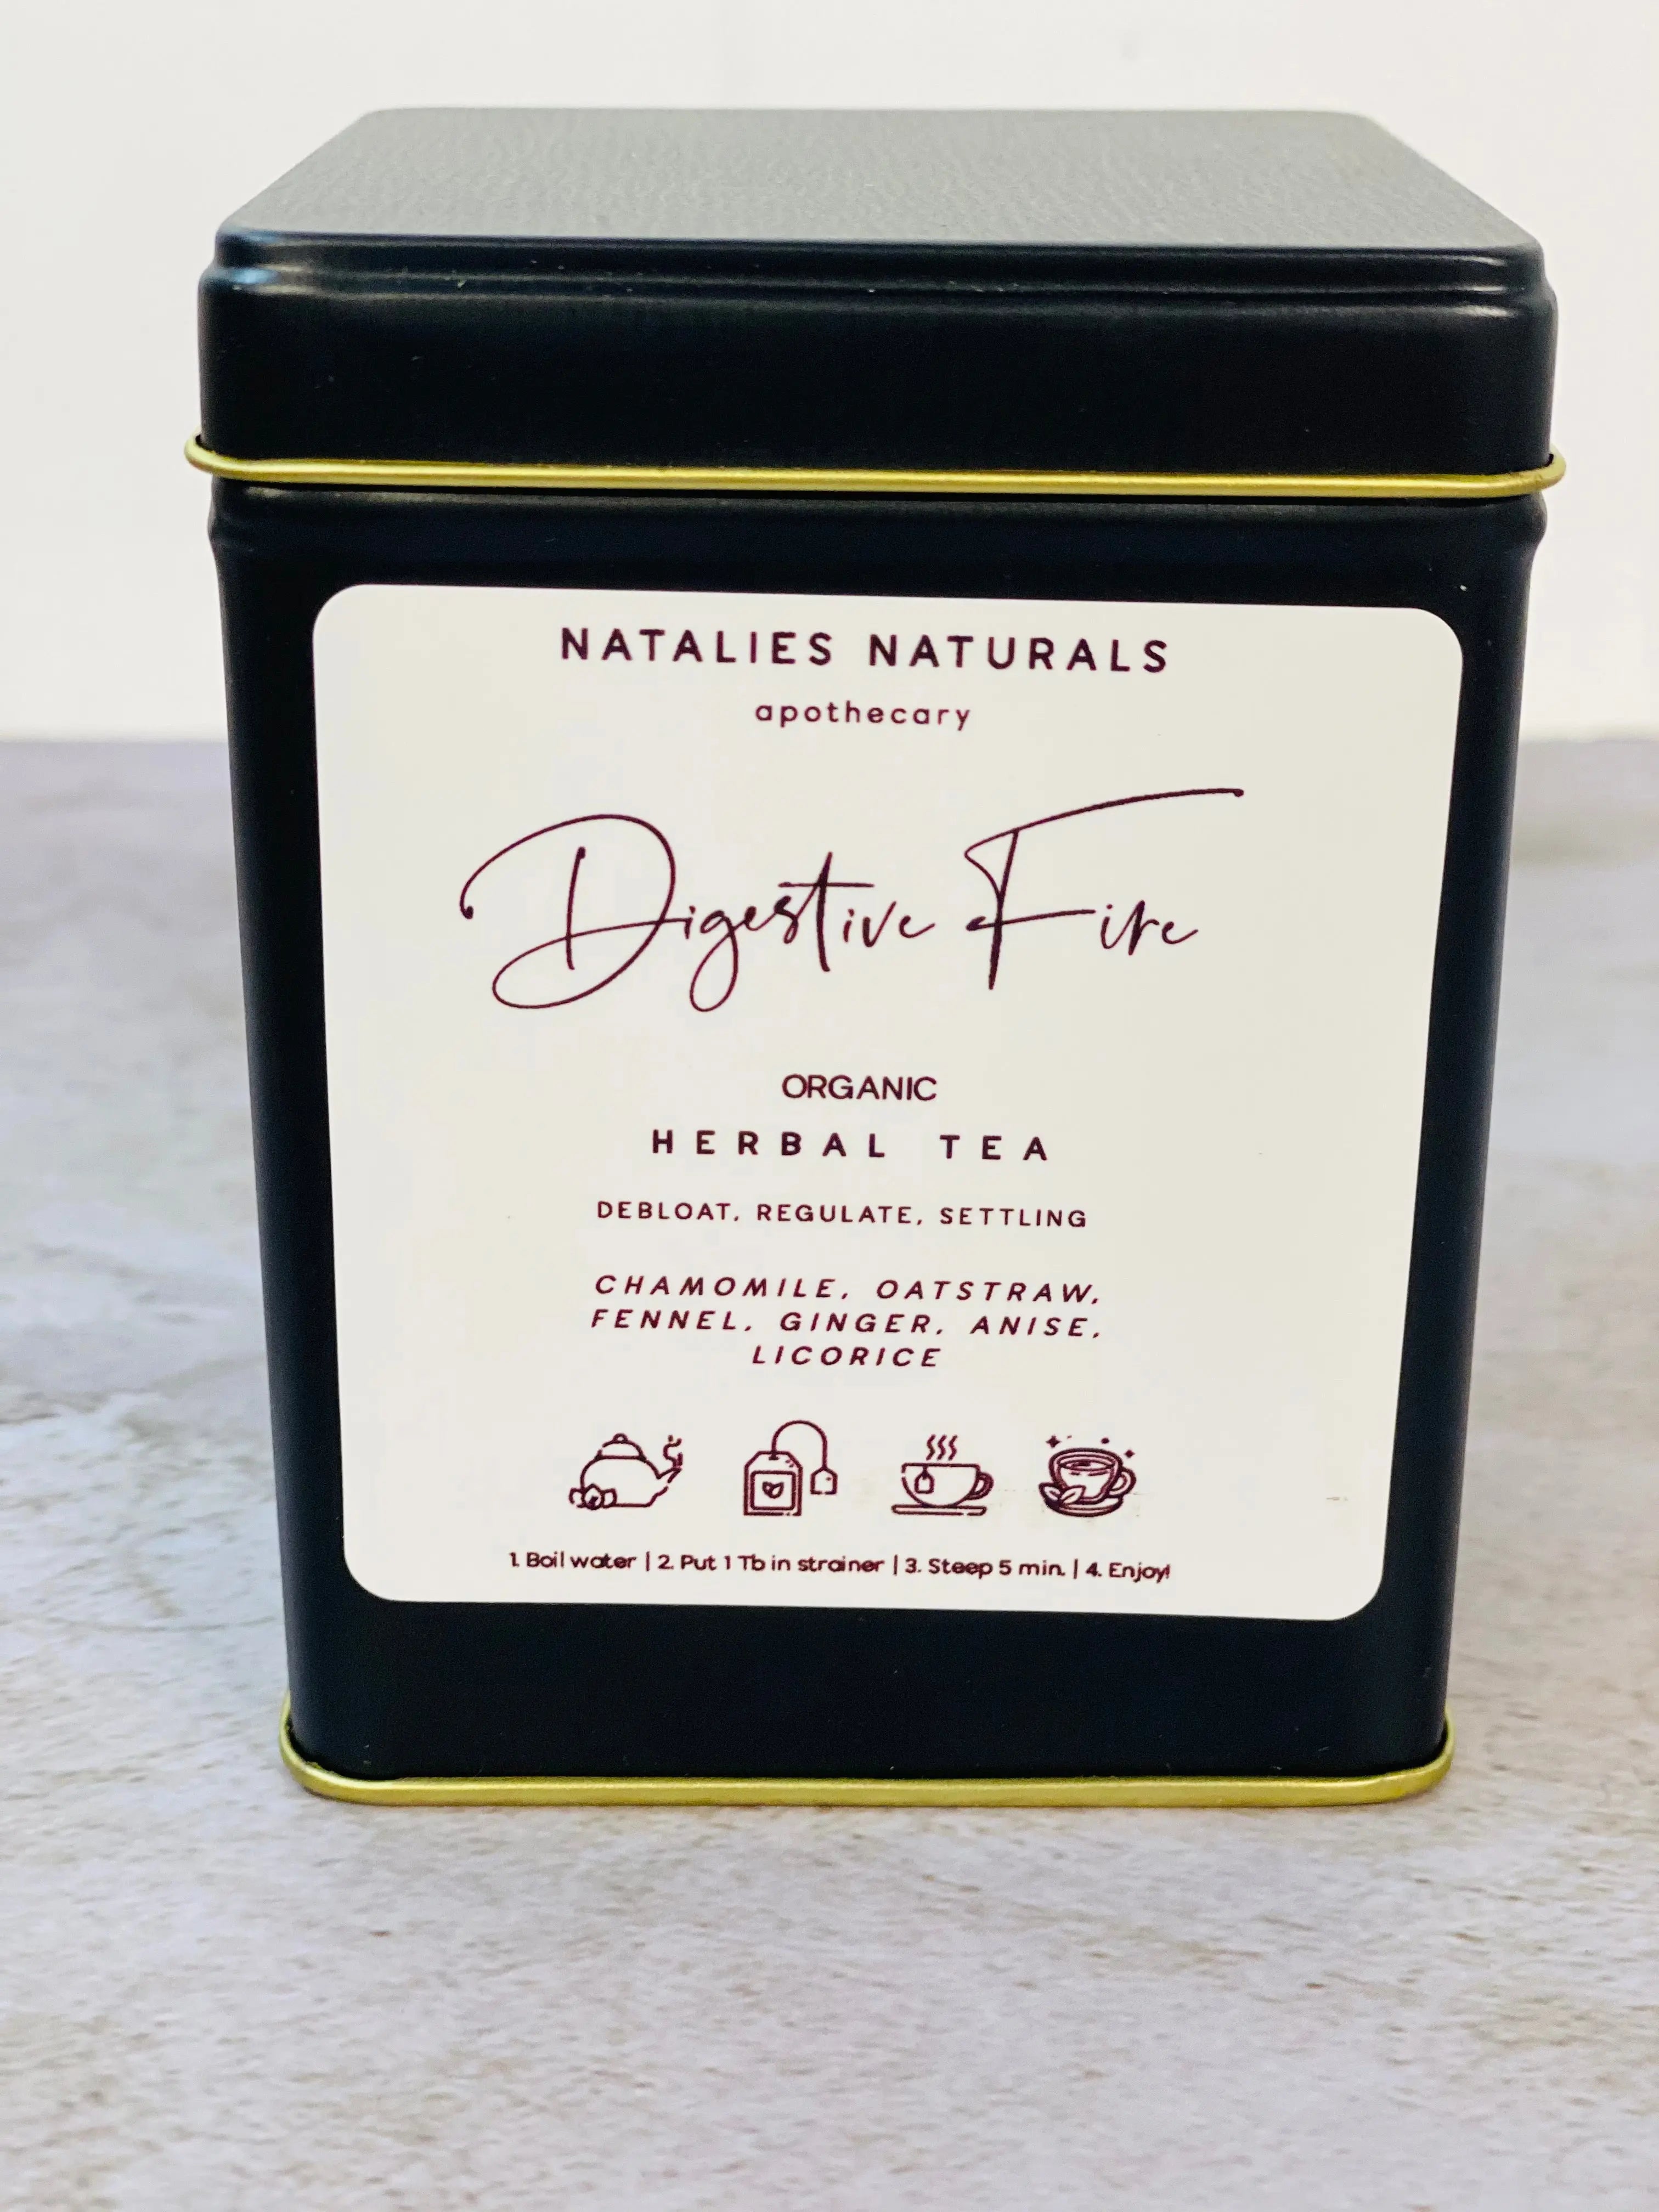 Digerstive Fire tea Natalies Naturals Botanica